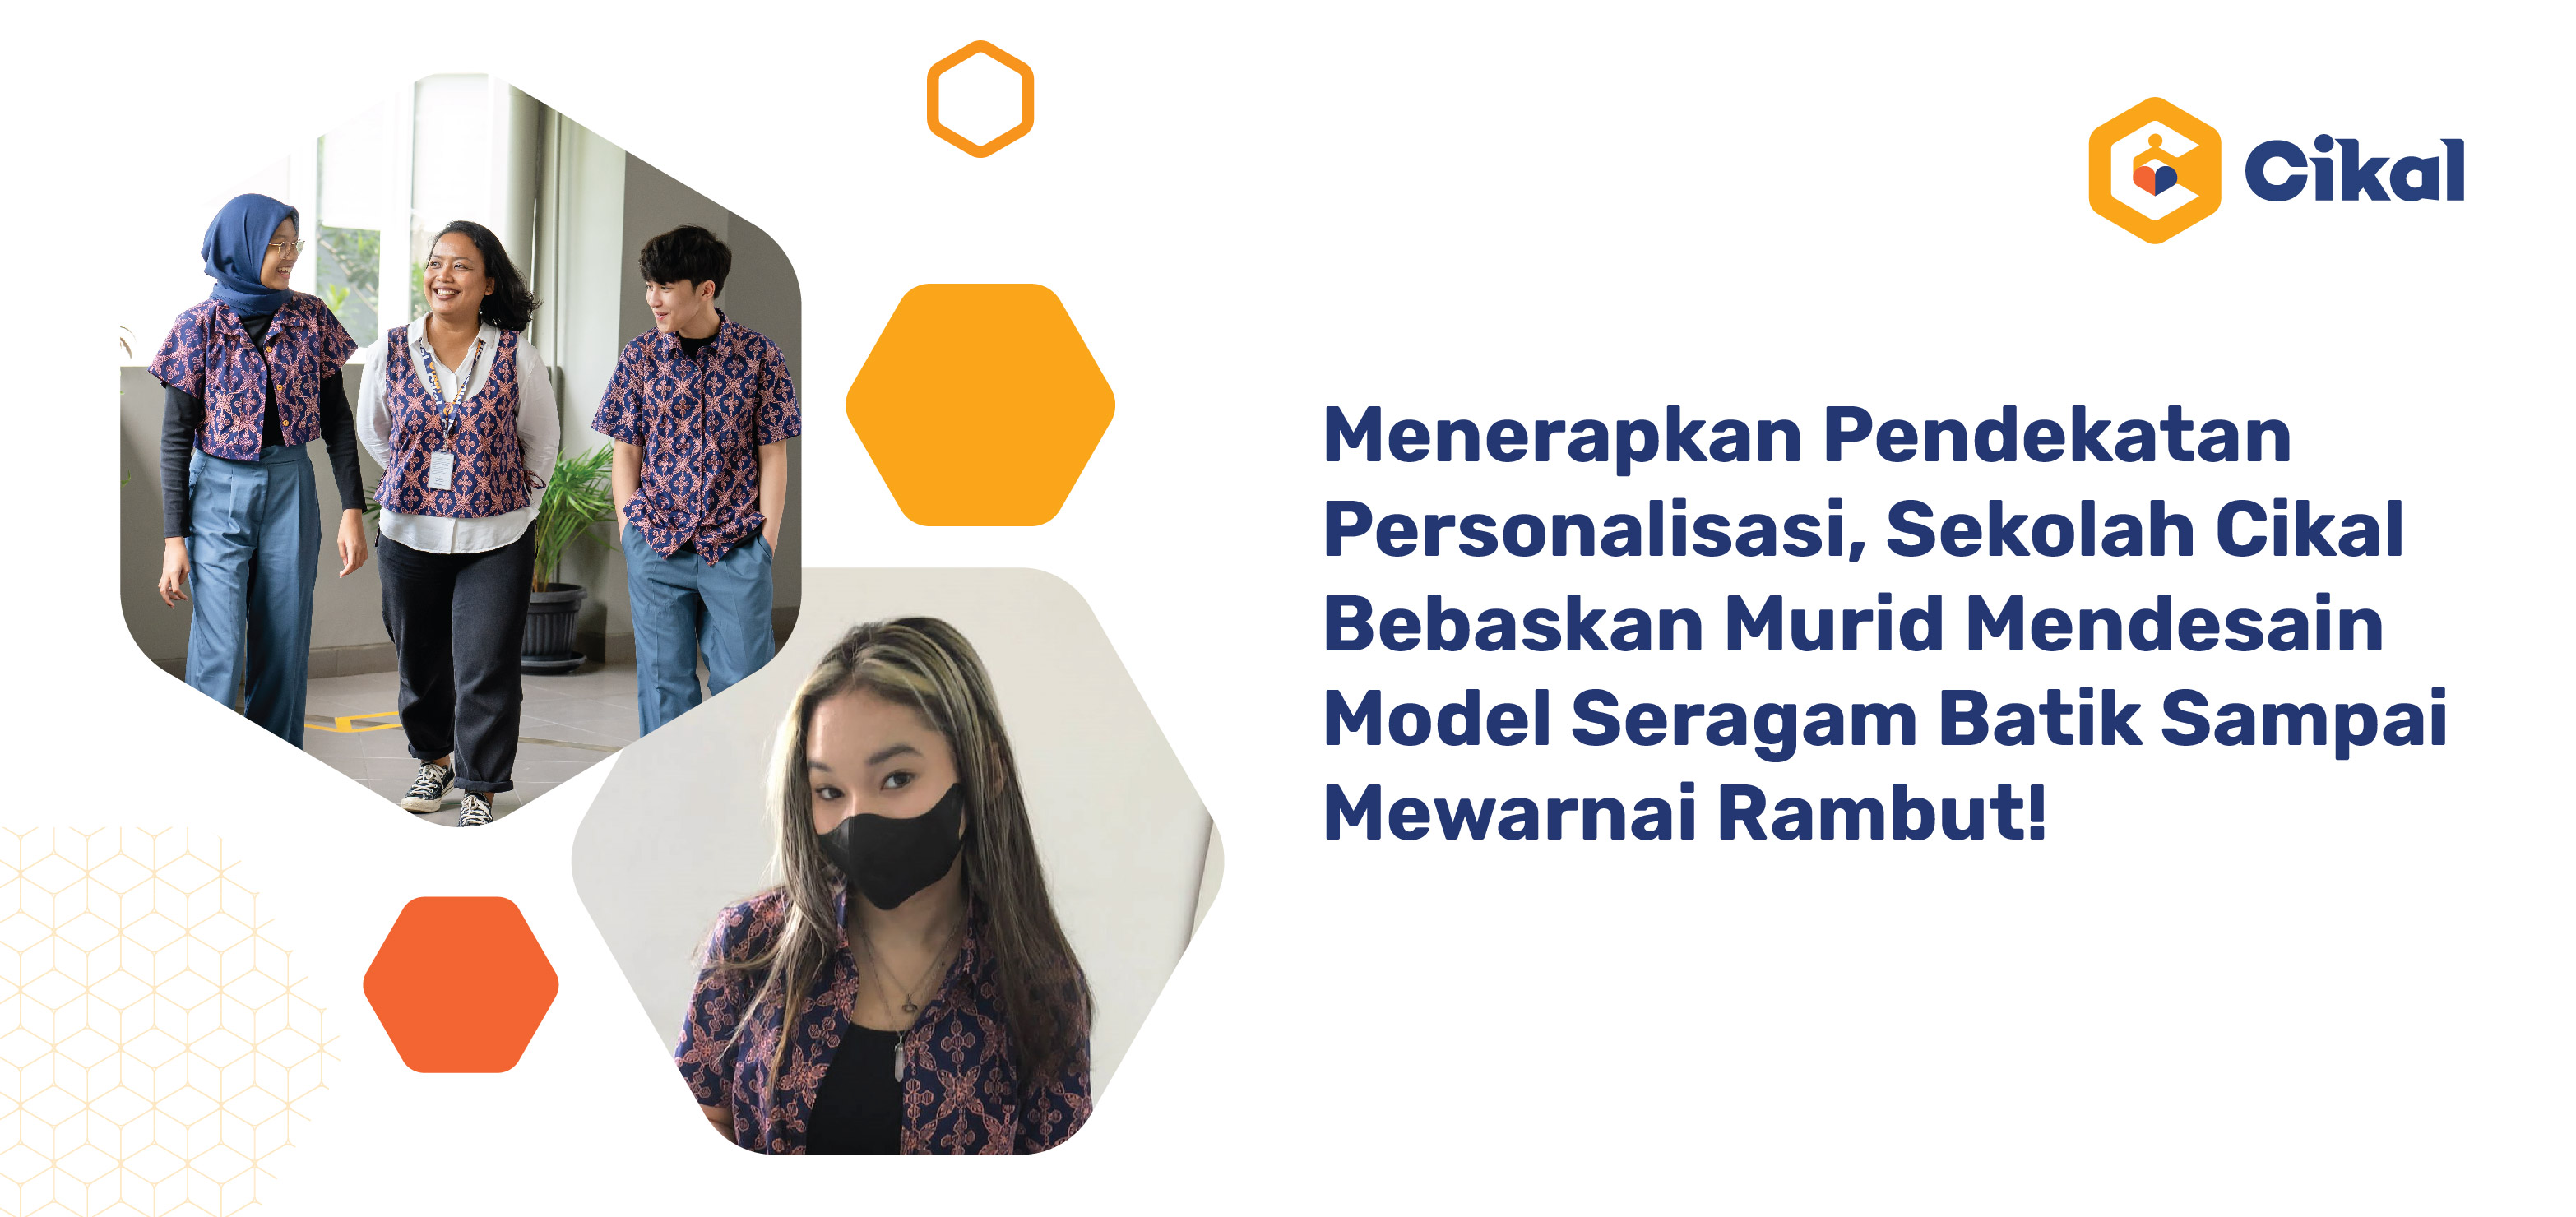 Menerapkan Pendekatan Personalisasi, Sekolah Cikal Bebaskan Murid Mendesain Model Seragam Batik Sampai Mewarnai Rambut!